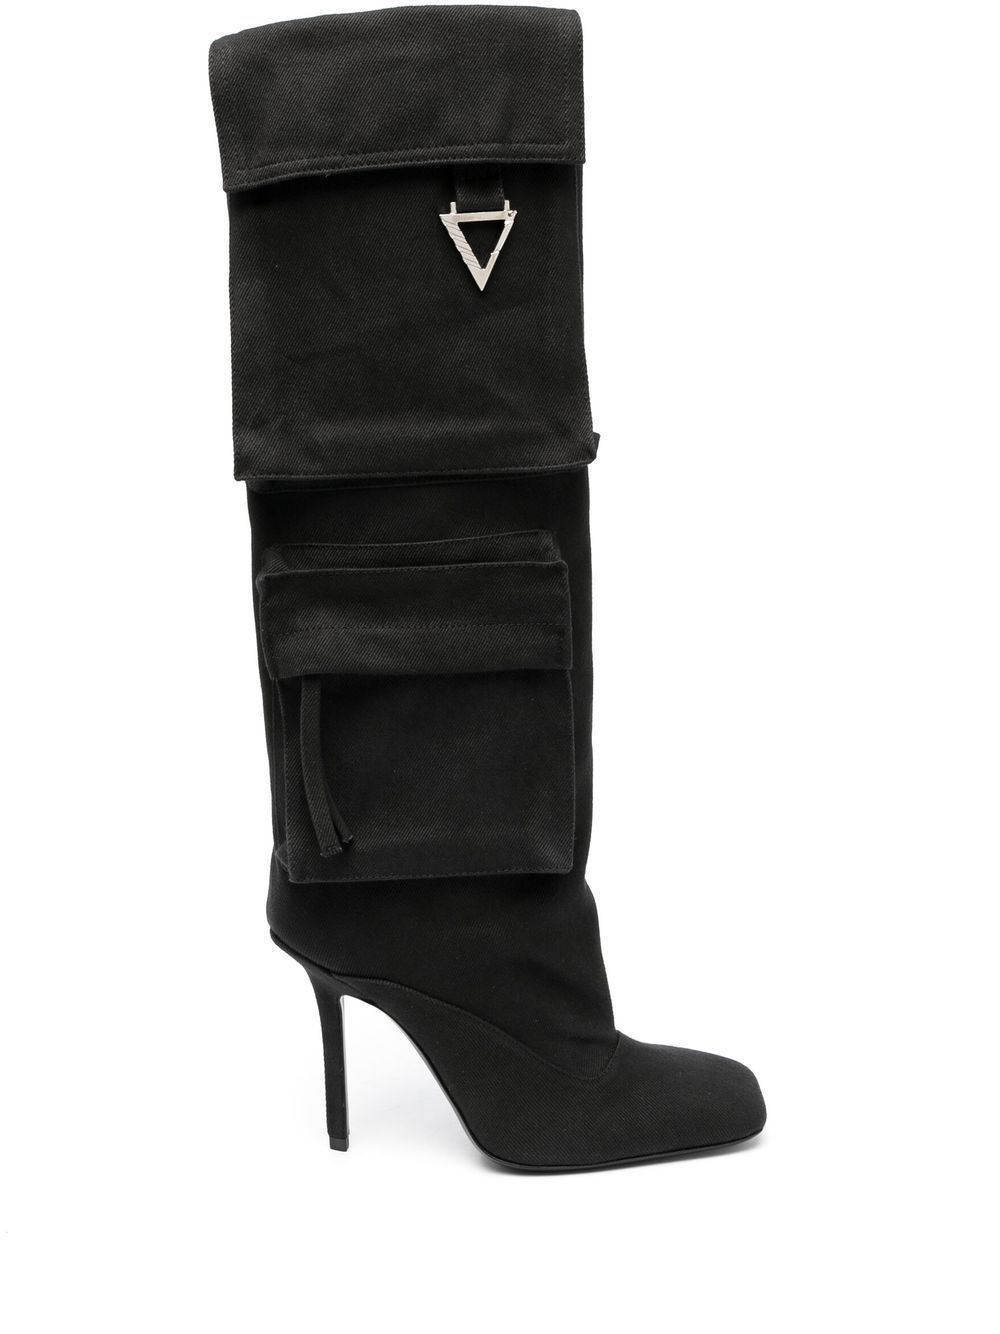 The Attico Sienna 105mm stiletto boots